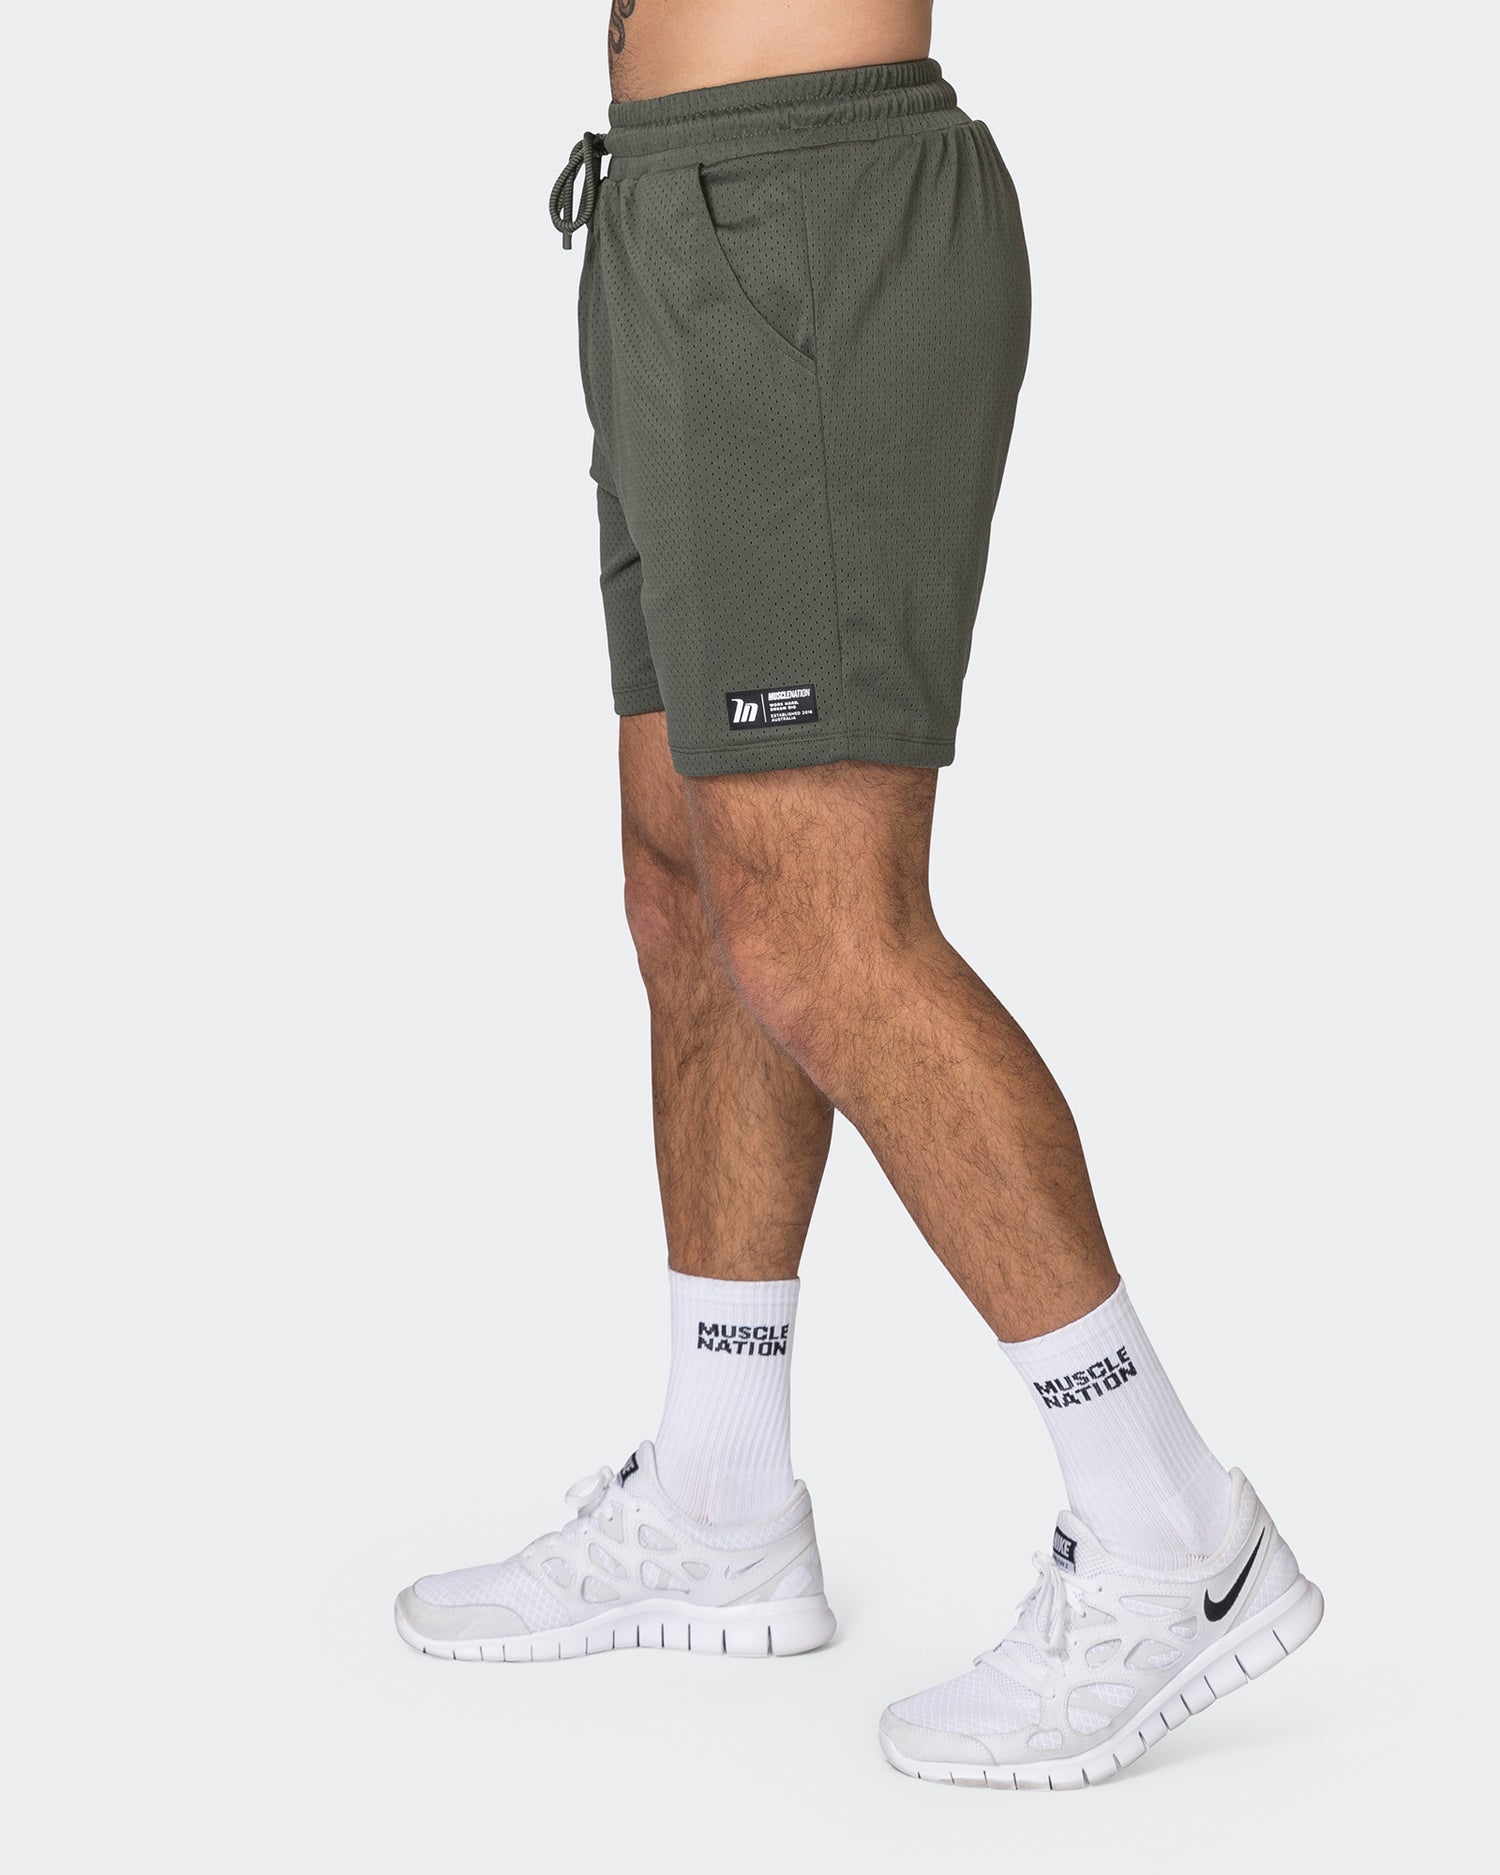 Lay Up 5" Shorts - Dark Khaki